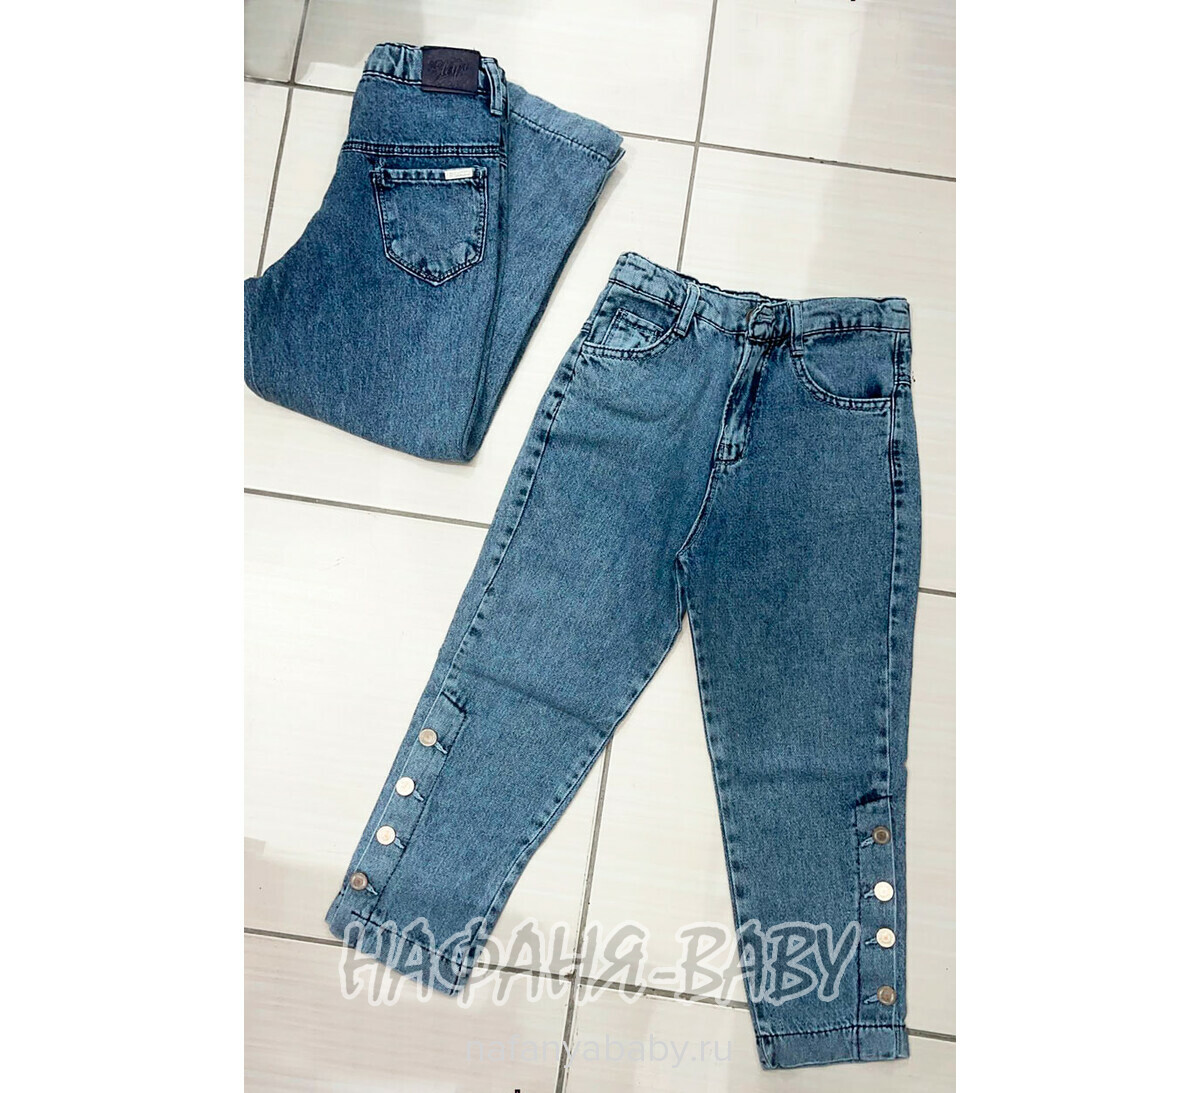 Джинсы подростковые ELEYSA Jeans арт: 63472 для девочки 13-16 лет, цвет синий, оптом Турция